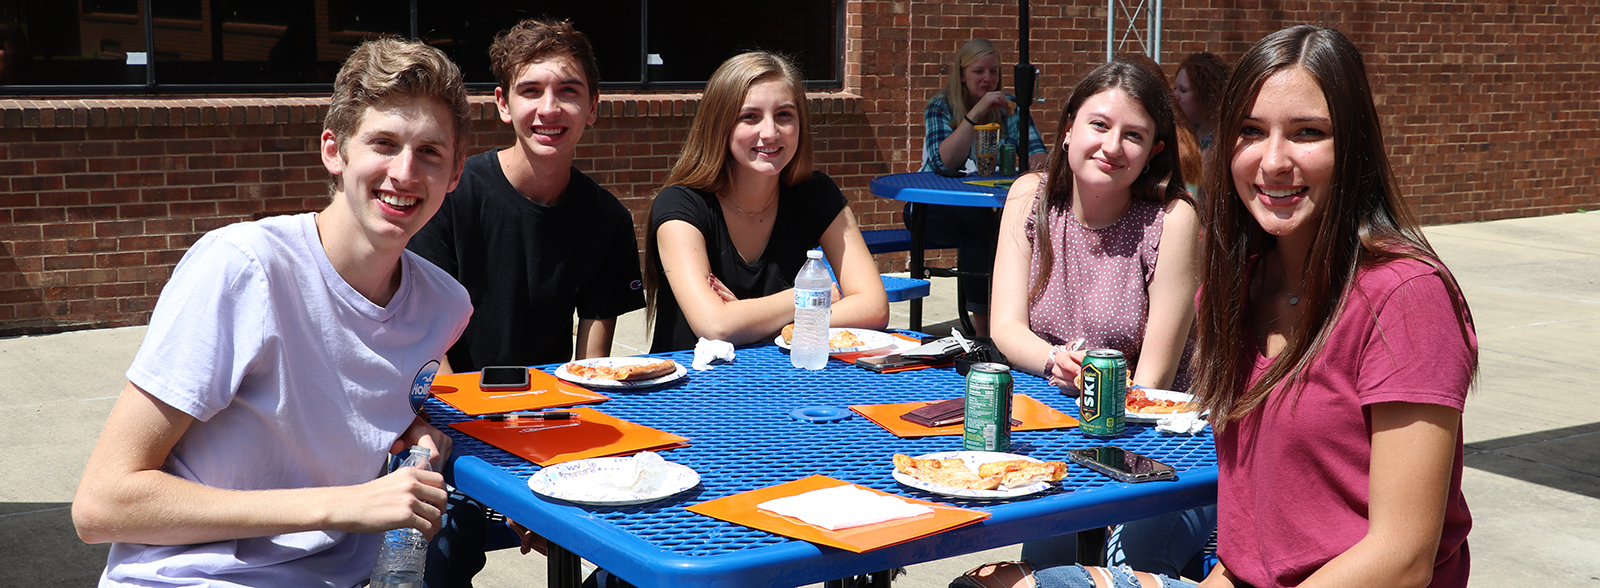 Students setting at picnic table